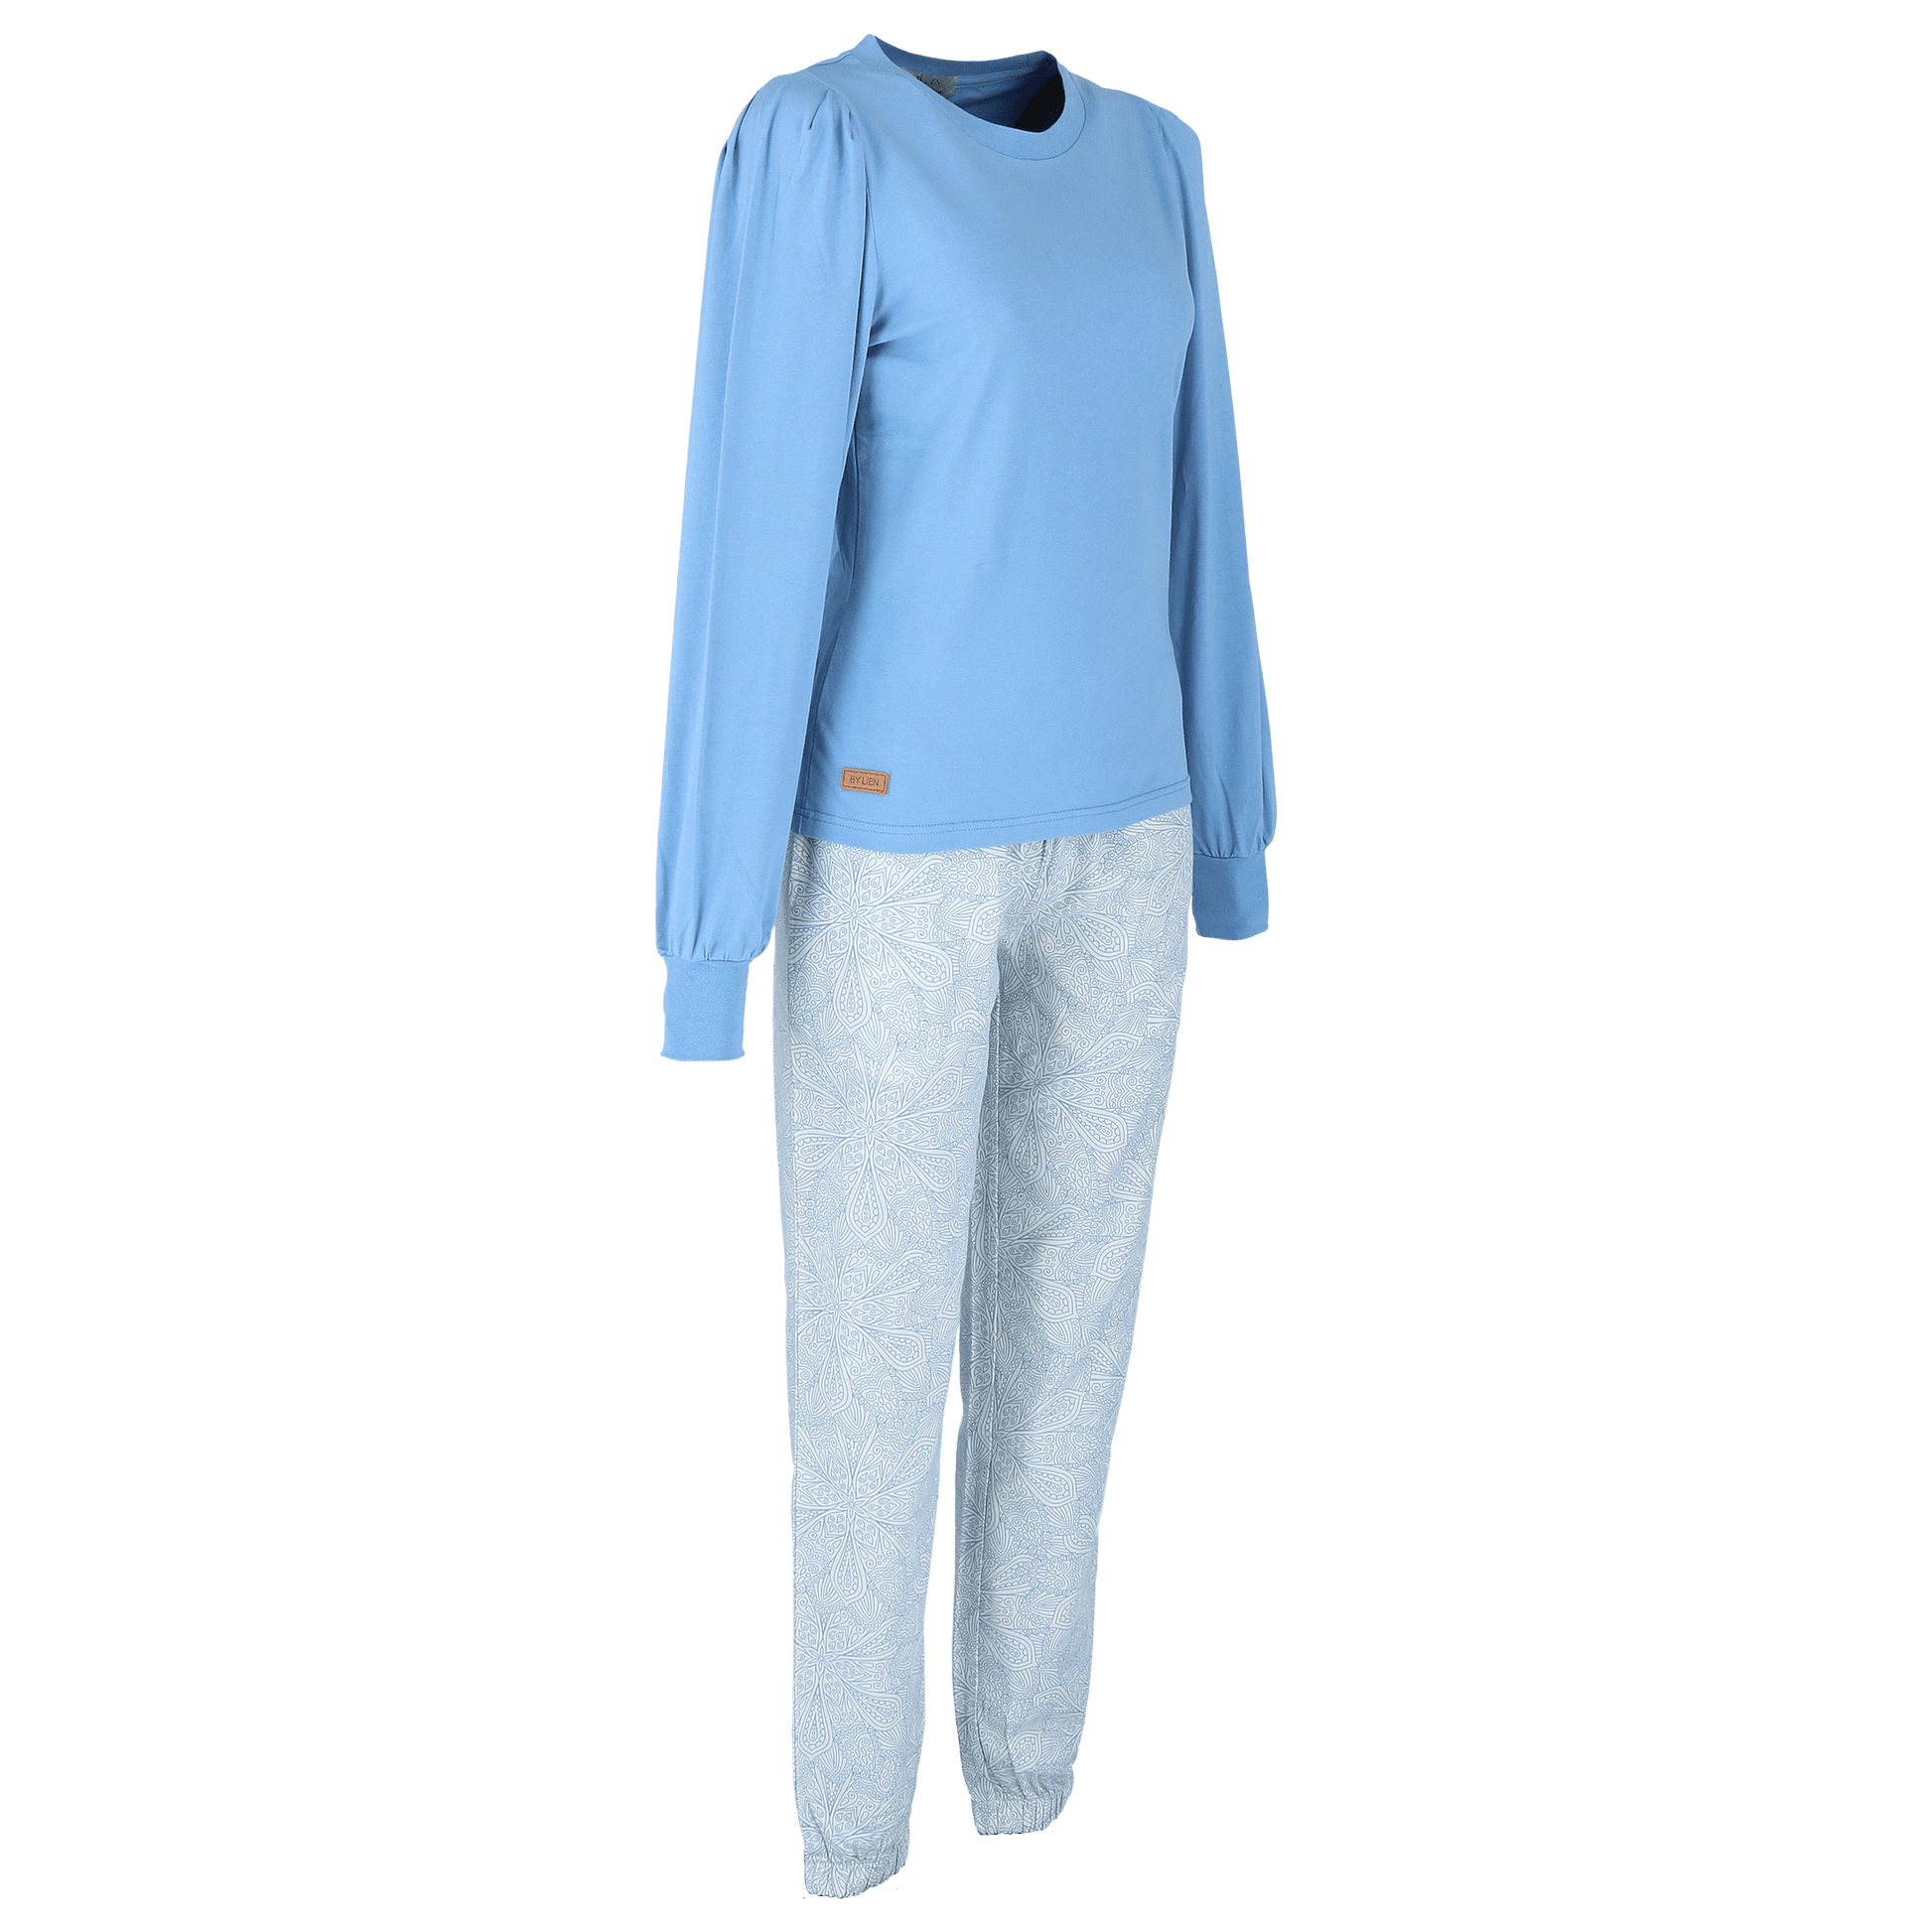 ByLien-Shop Comfort pyjamas - Forever Blue